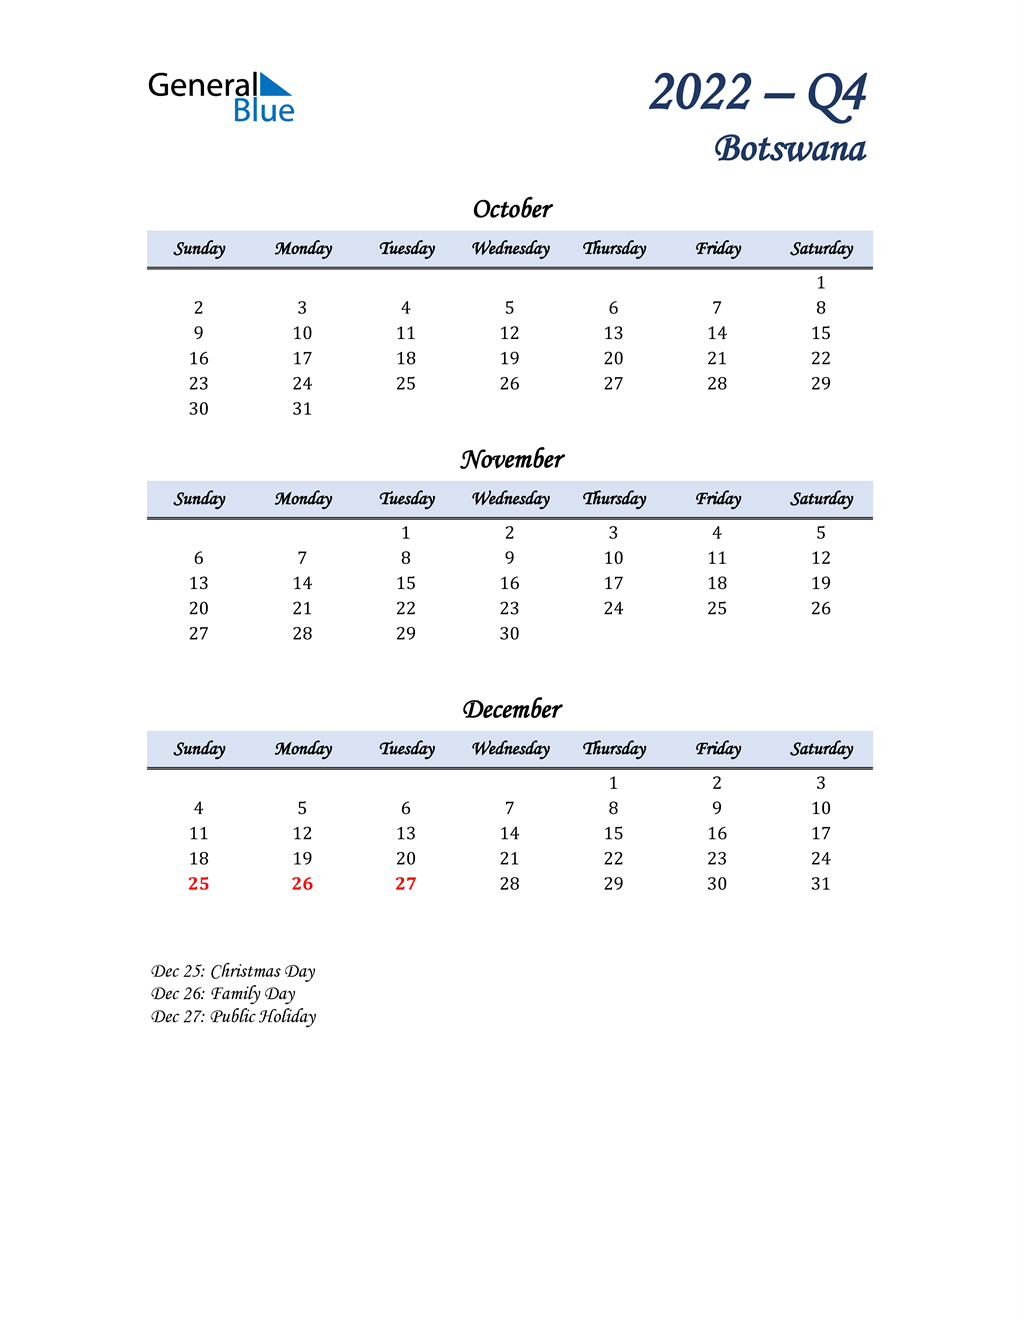  October, November, and December Calendar for Botswana